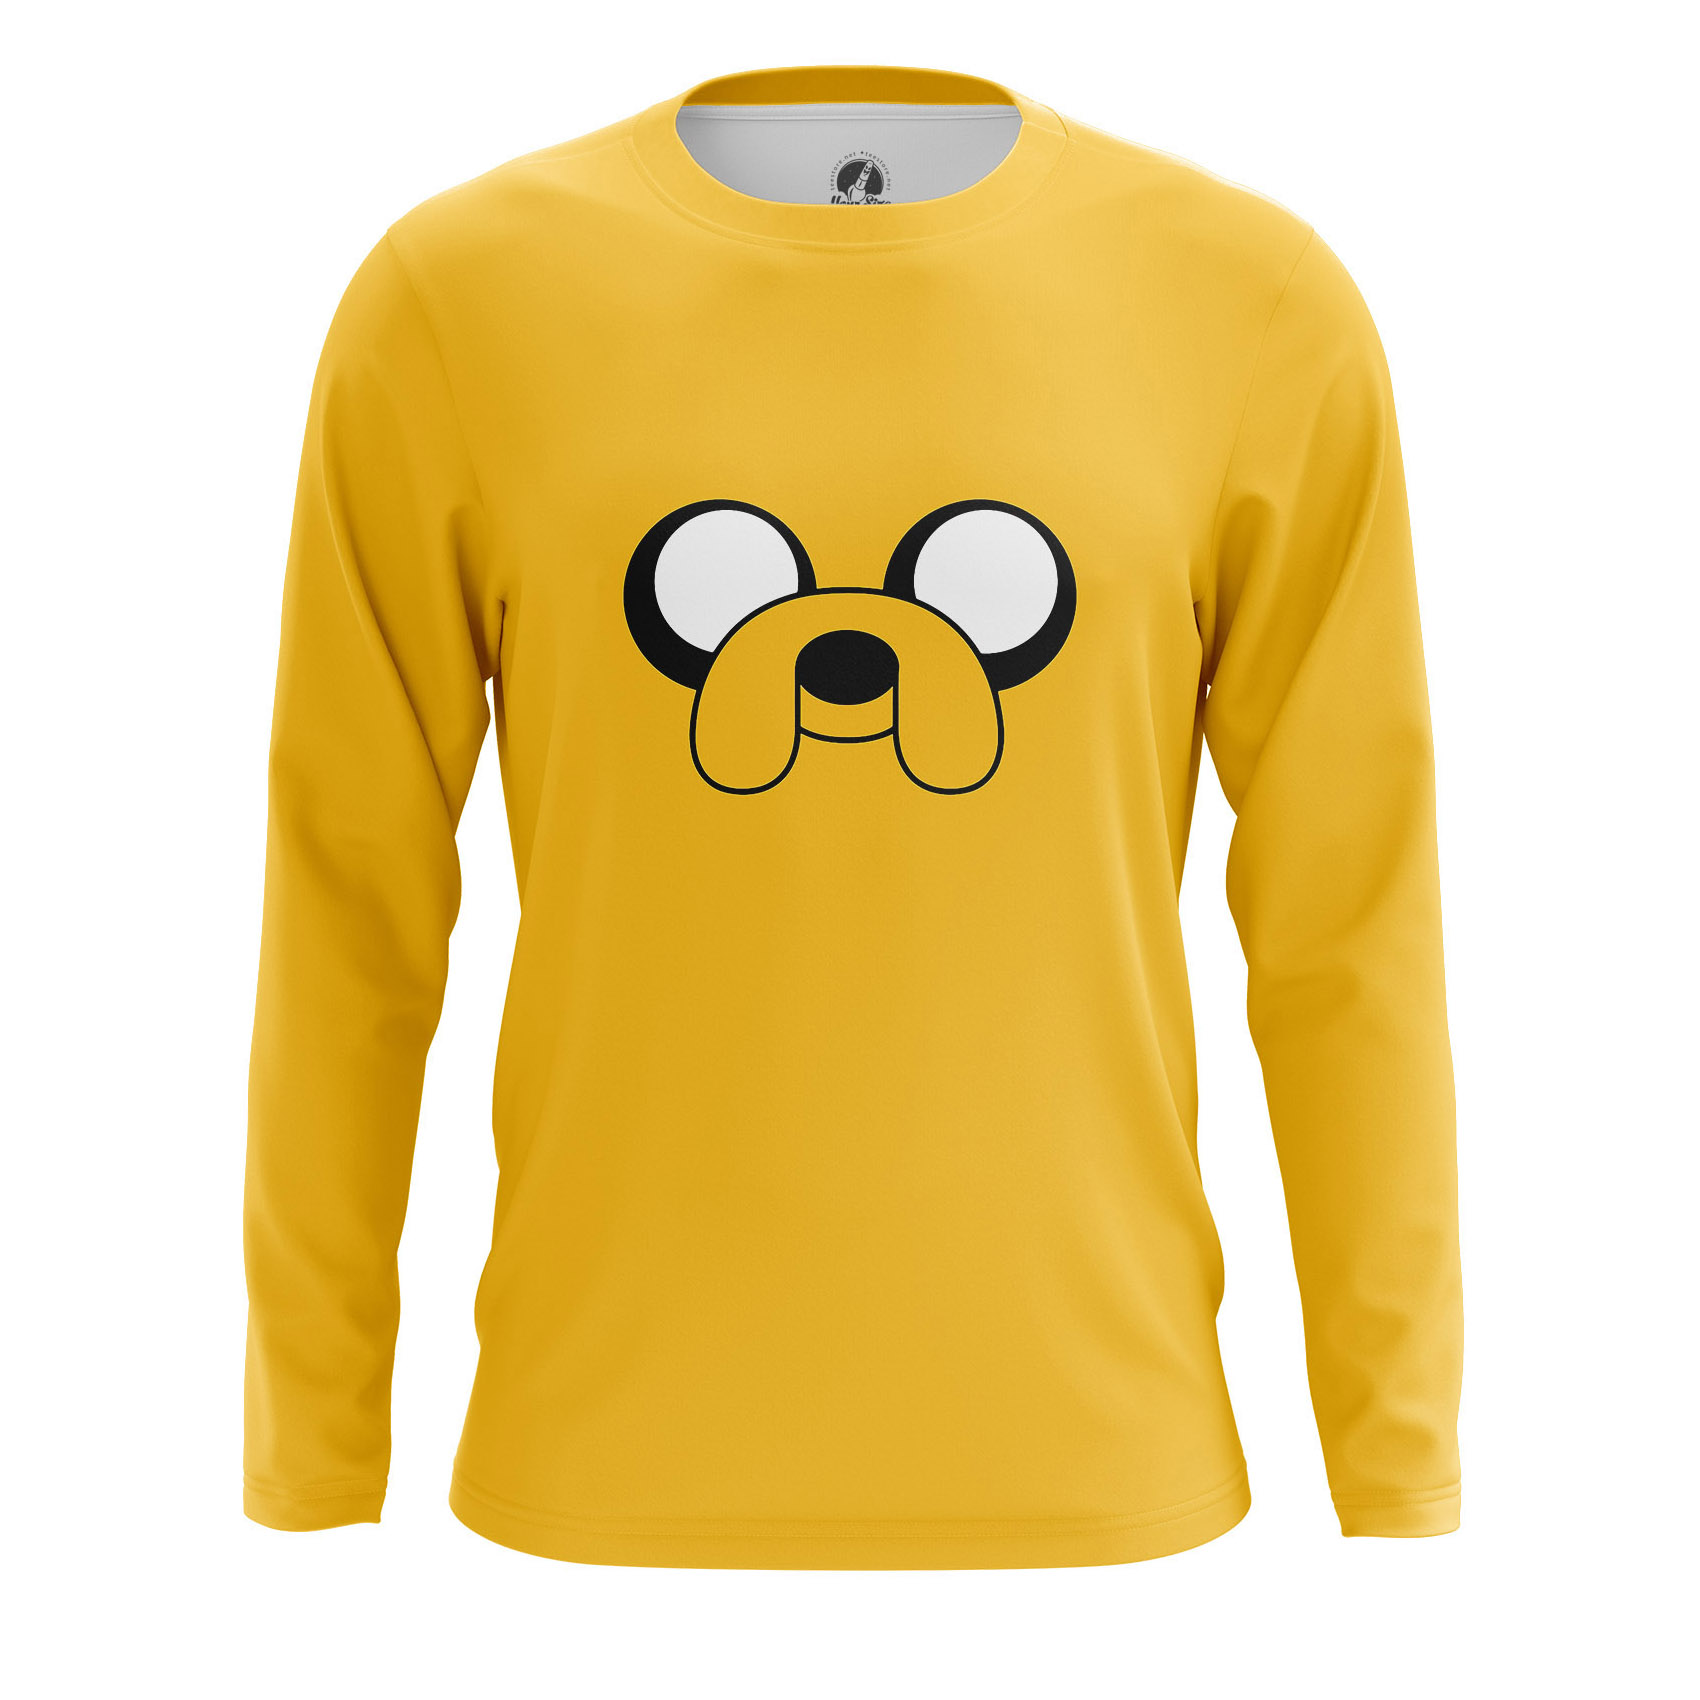 Adventure Time T Shirt Homme T-shirt Gris T-shirt Jake le Chien XL Coton 2XL